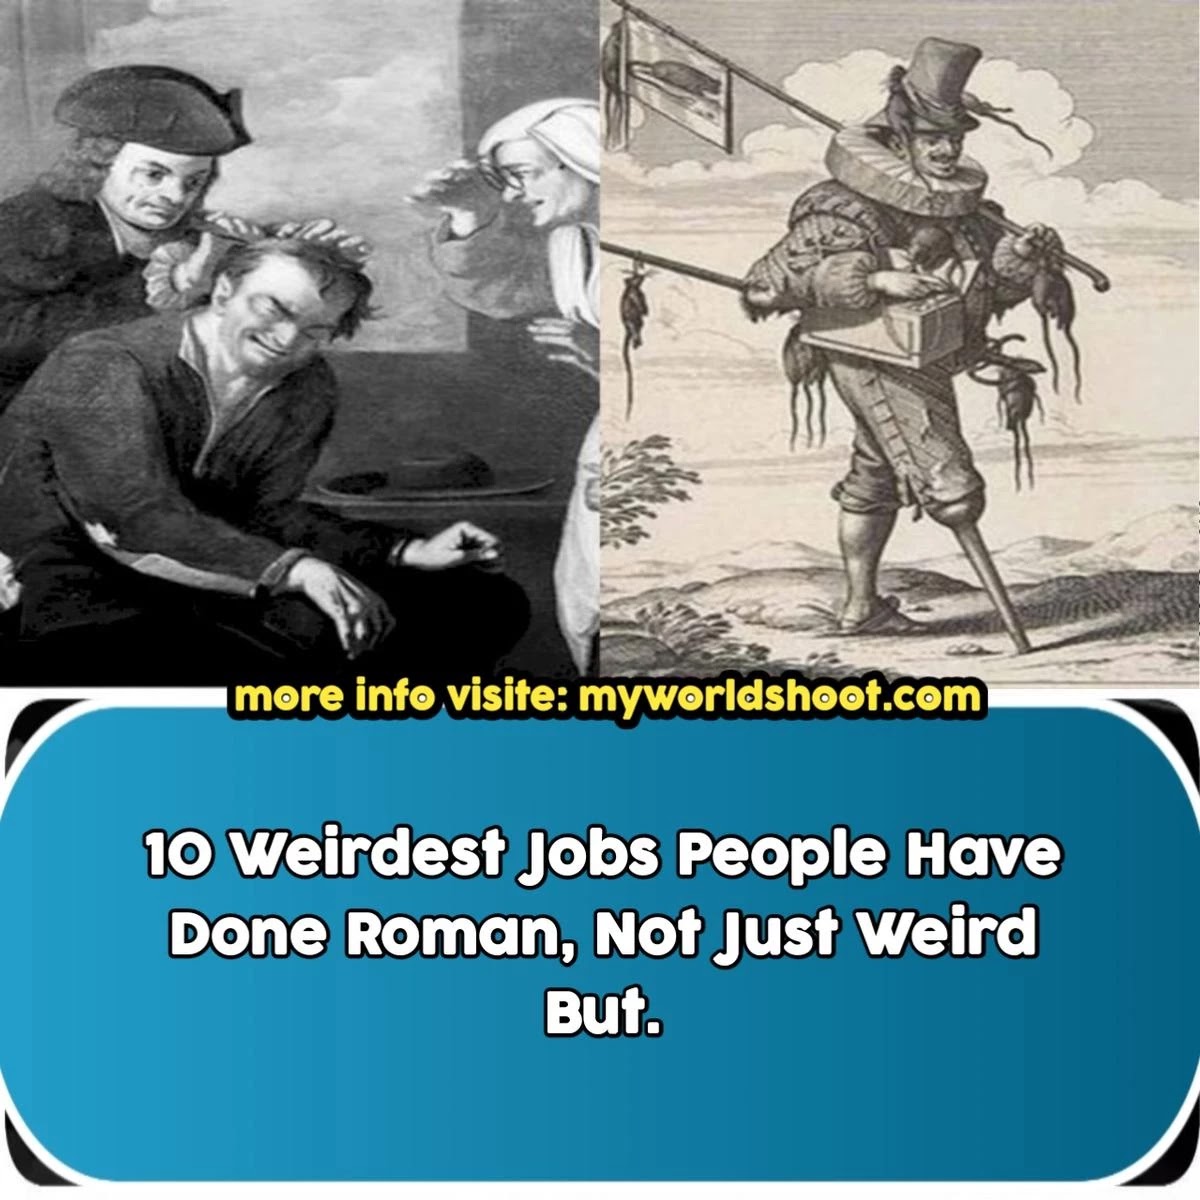 Weirdest-Jobs-People-Have-Done-Roman-Not-Just-Weird-But